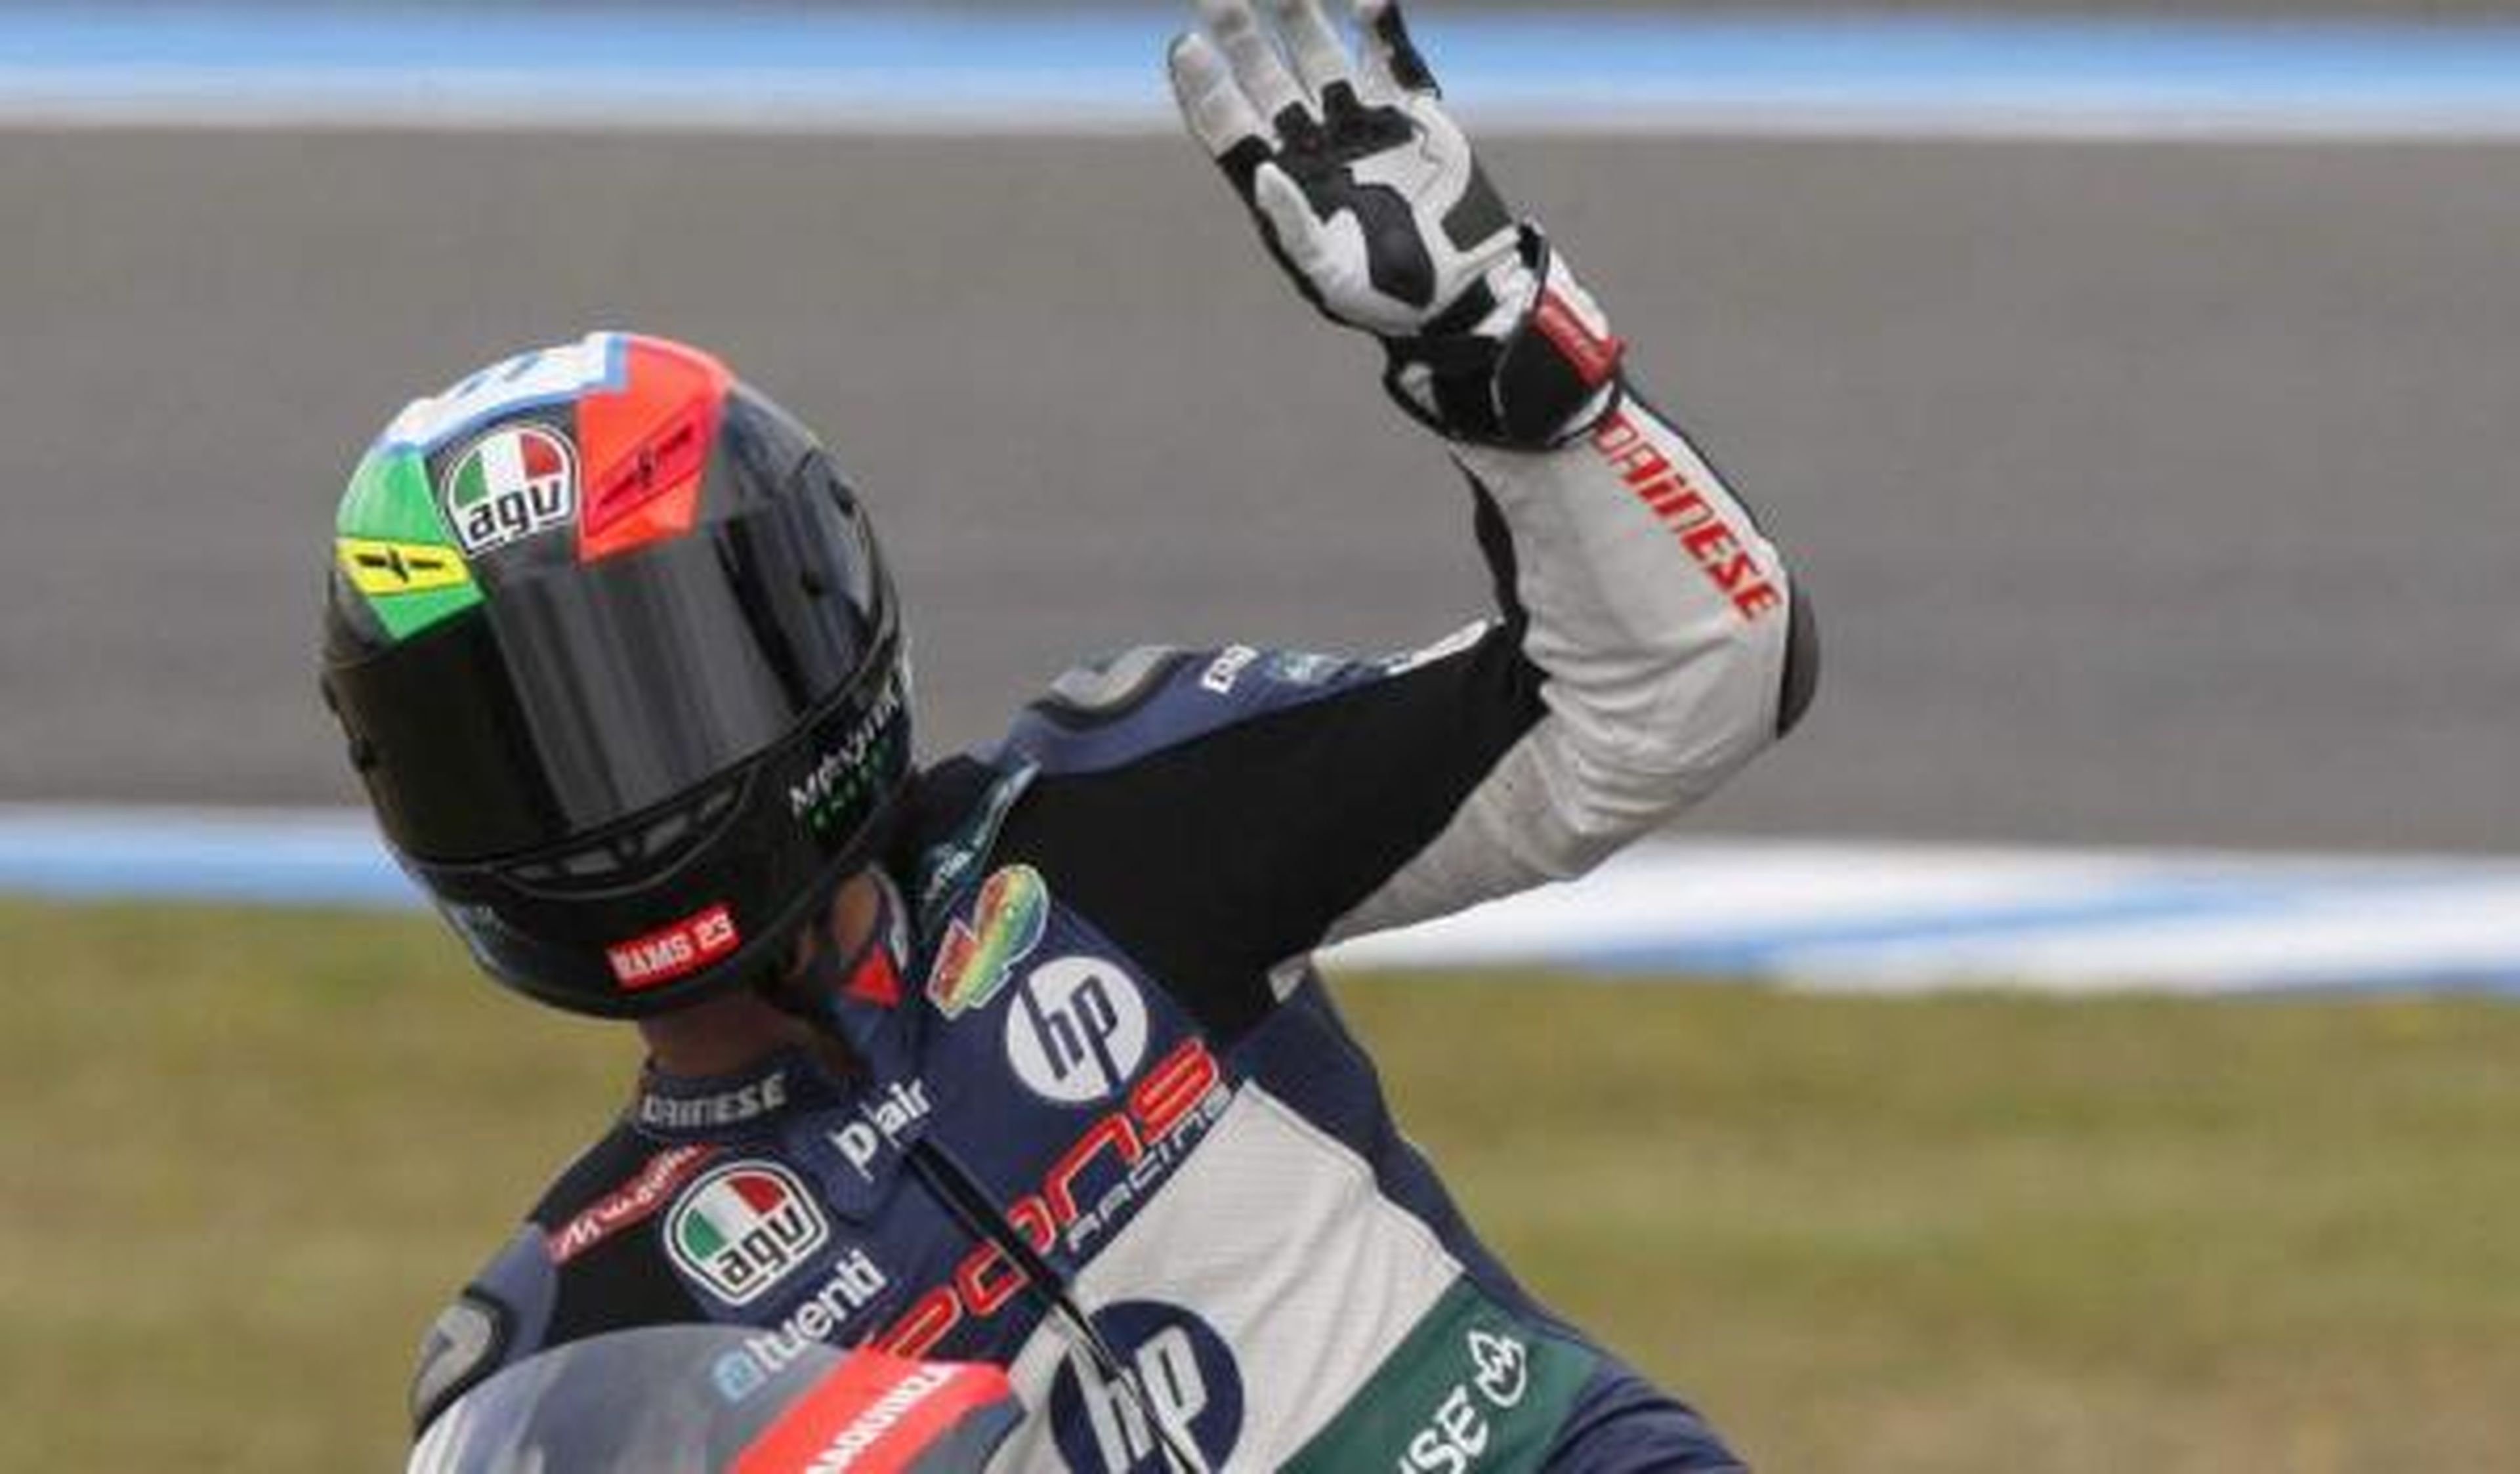 GP de Aragón 2012: triunfo de Espargaró sobre Márquez